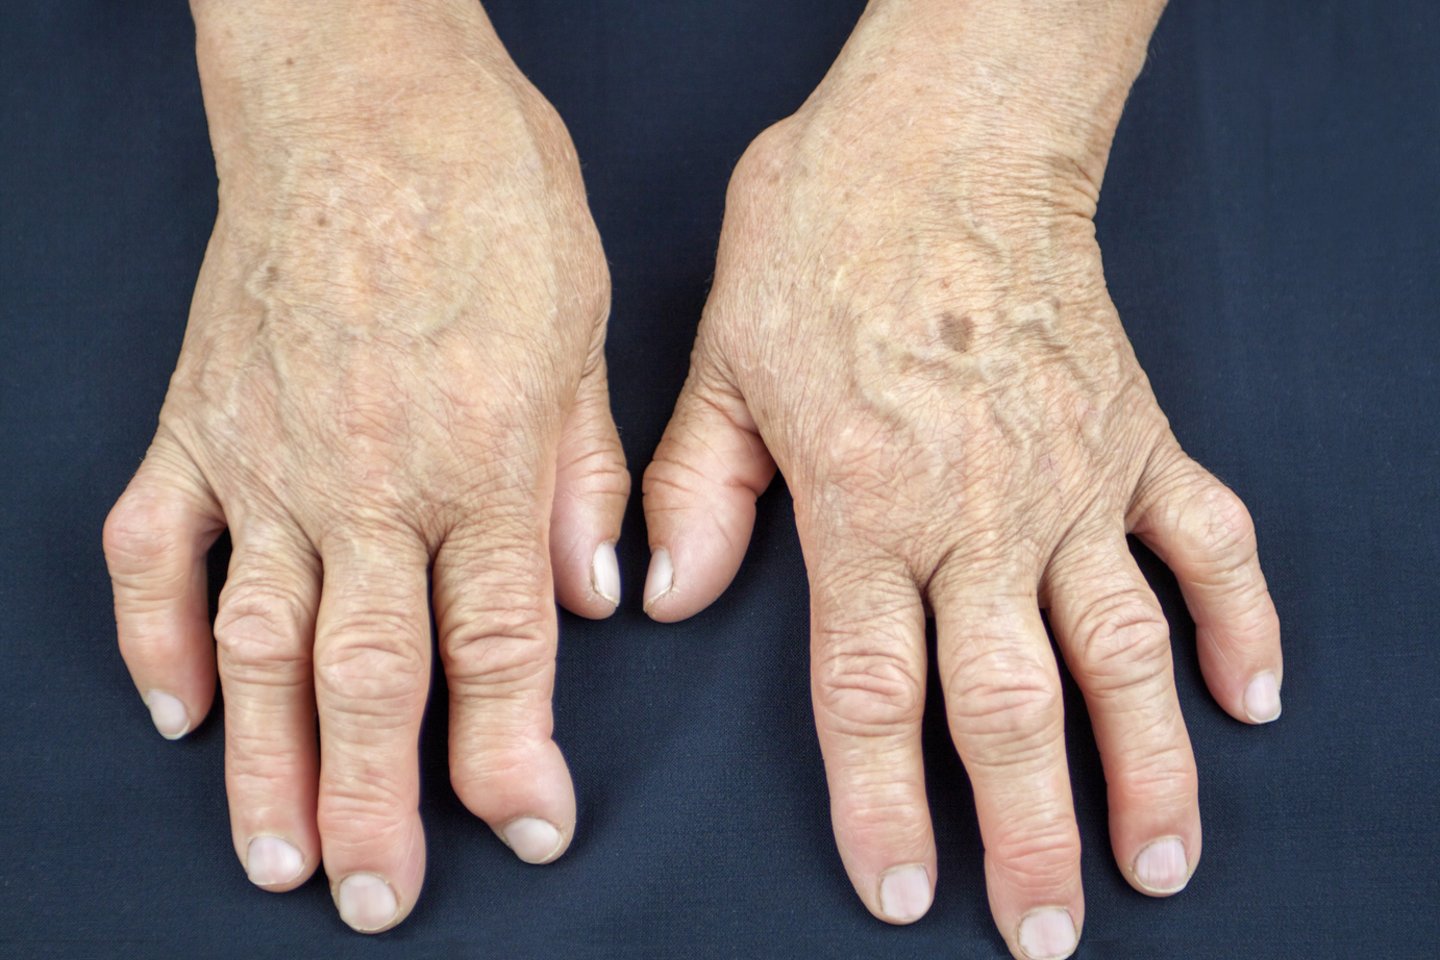 Visame pasaulyje milijonai žmonių serga artritu, jų gyvenimas dažnai būna paženklintas nuolatinio sąnarių skausmo ir uždegimo.  <br>123rf nuotr.